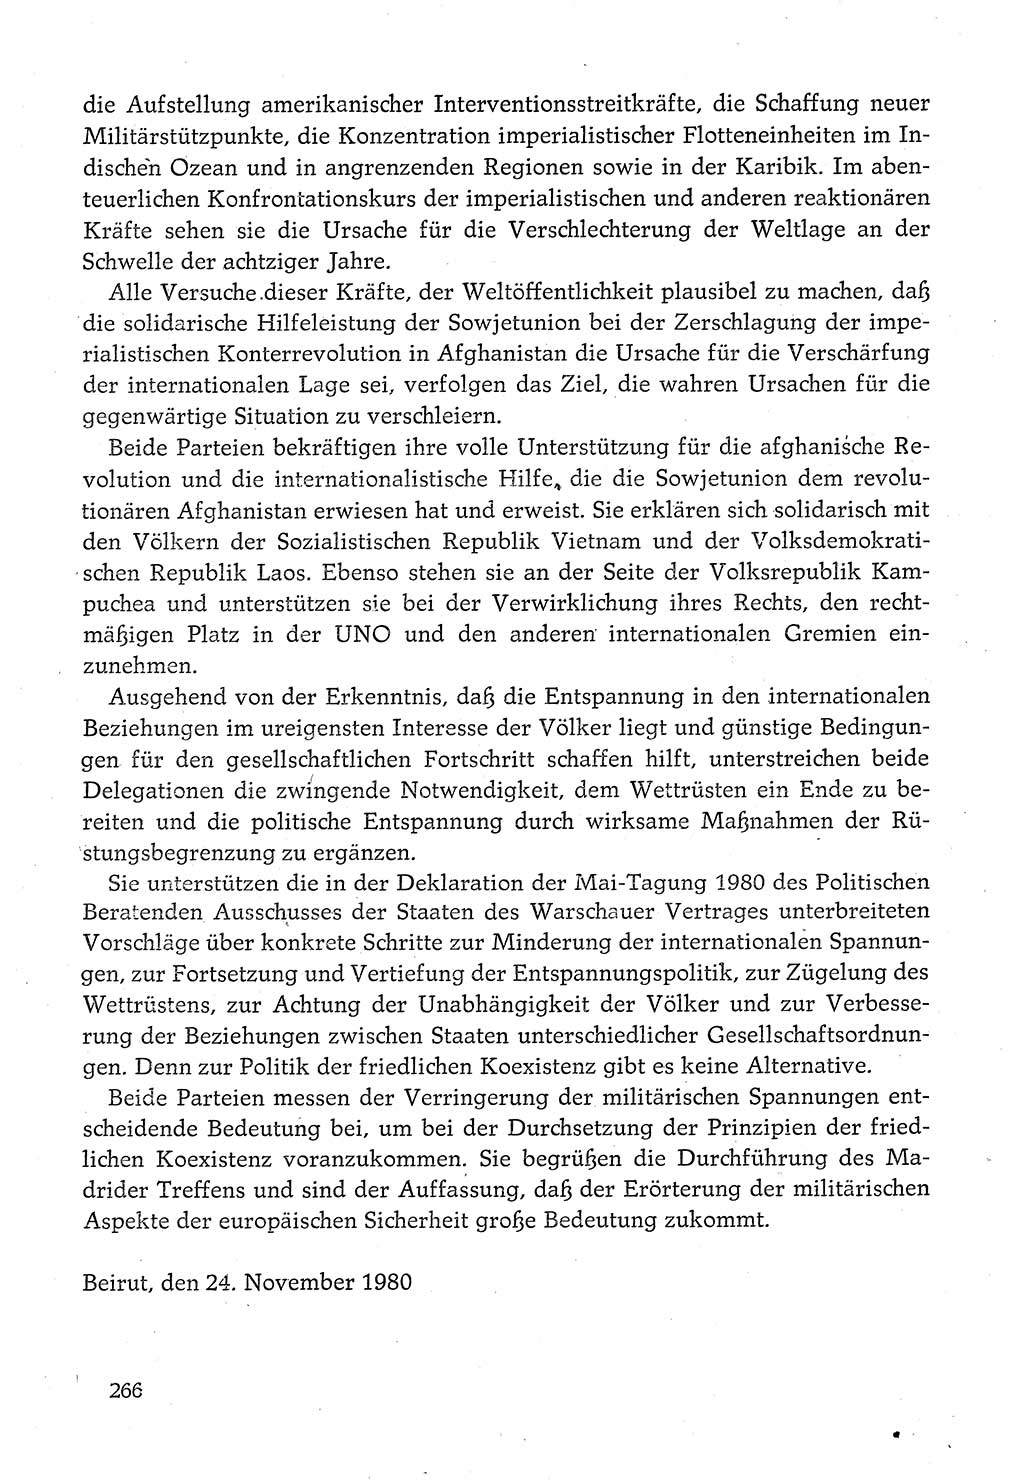 Dokumente der Sozialistischen Einheitspartei Deutschlands (SED) [Deutsche Demokratische Republik (DDR)] 1980-1981, Seite 266 (Dok. SED DDR 1980-1981, S. 266)